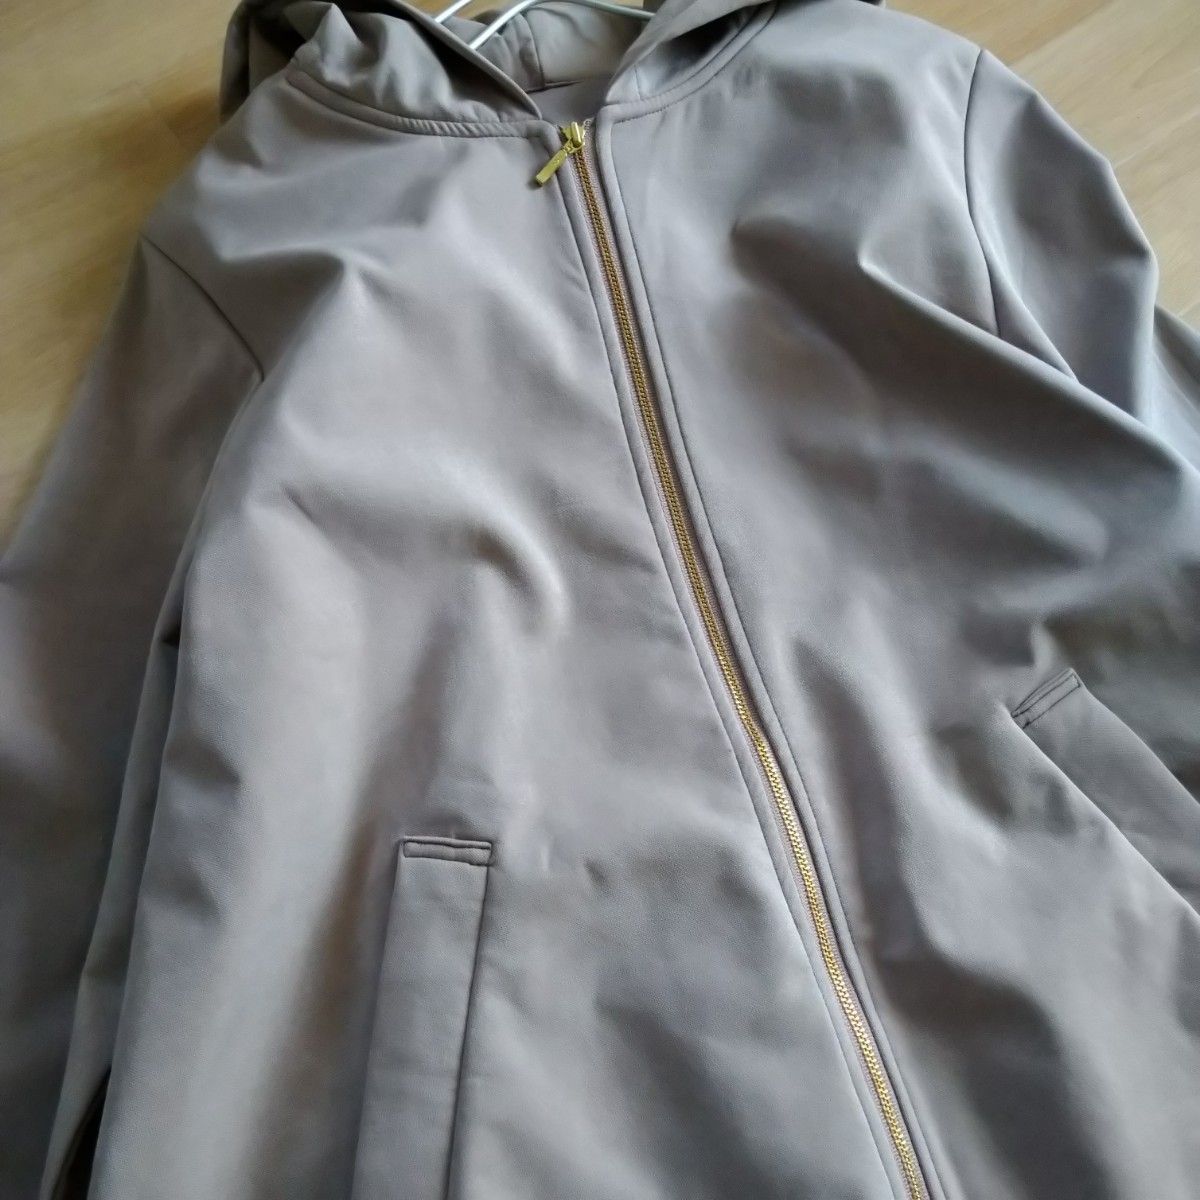 DRESKIP ドレスキップ　春ジャケット　マウンテンパーカー　Ｌ　ゆったり　大きいサイズ　ピンクベージュ